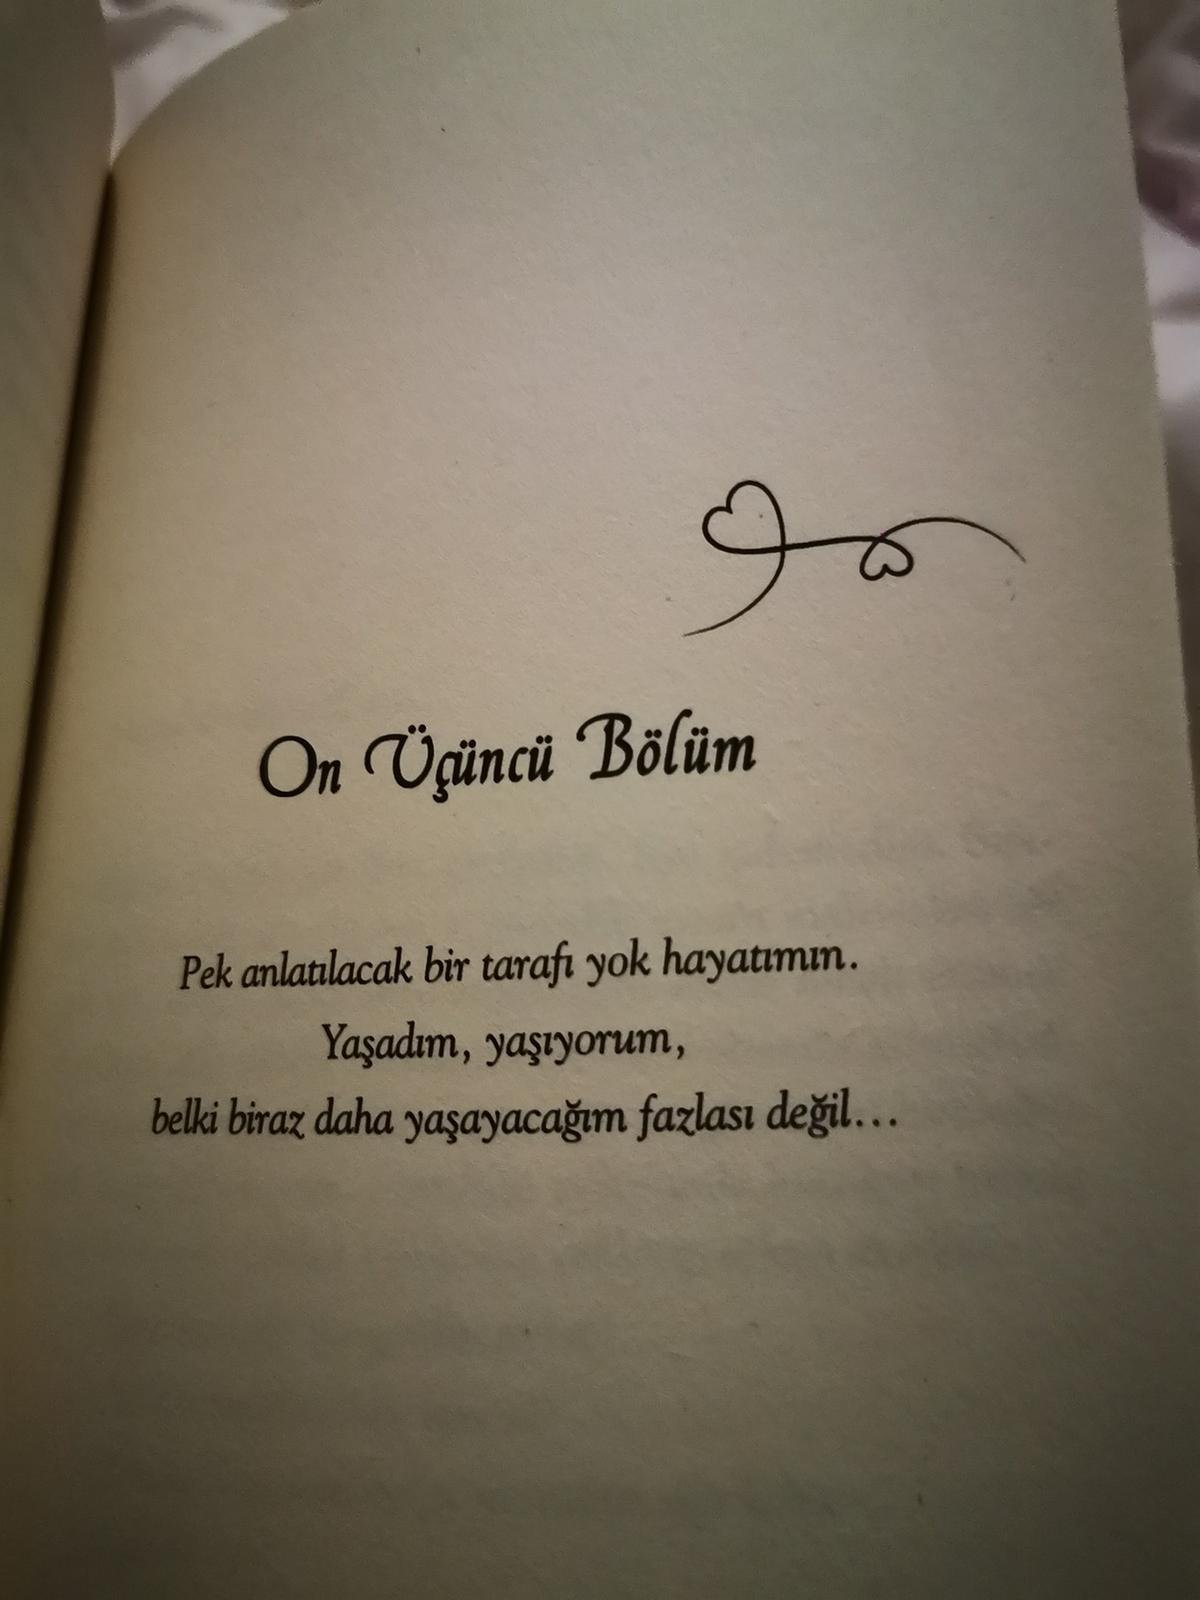 Eine Buchseite mit türkischem Text: On Ücüncü Bölüm, pek anlatilacak bir tarafi yok hayatimm. Yasadim, yaiyorum, belki biraz daha yasayacagim fazlasi degil. 